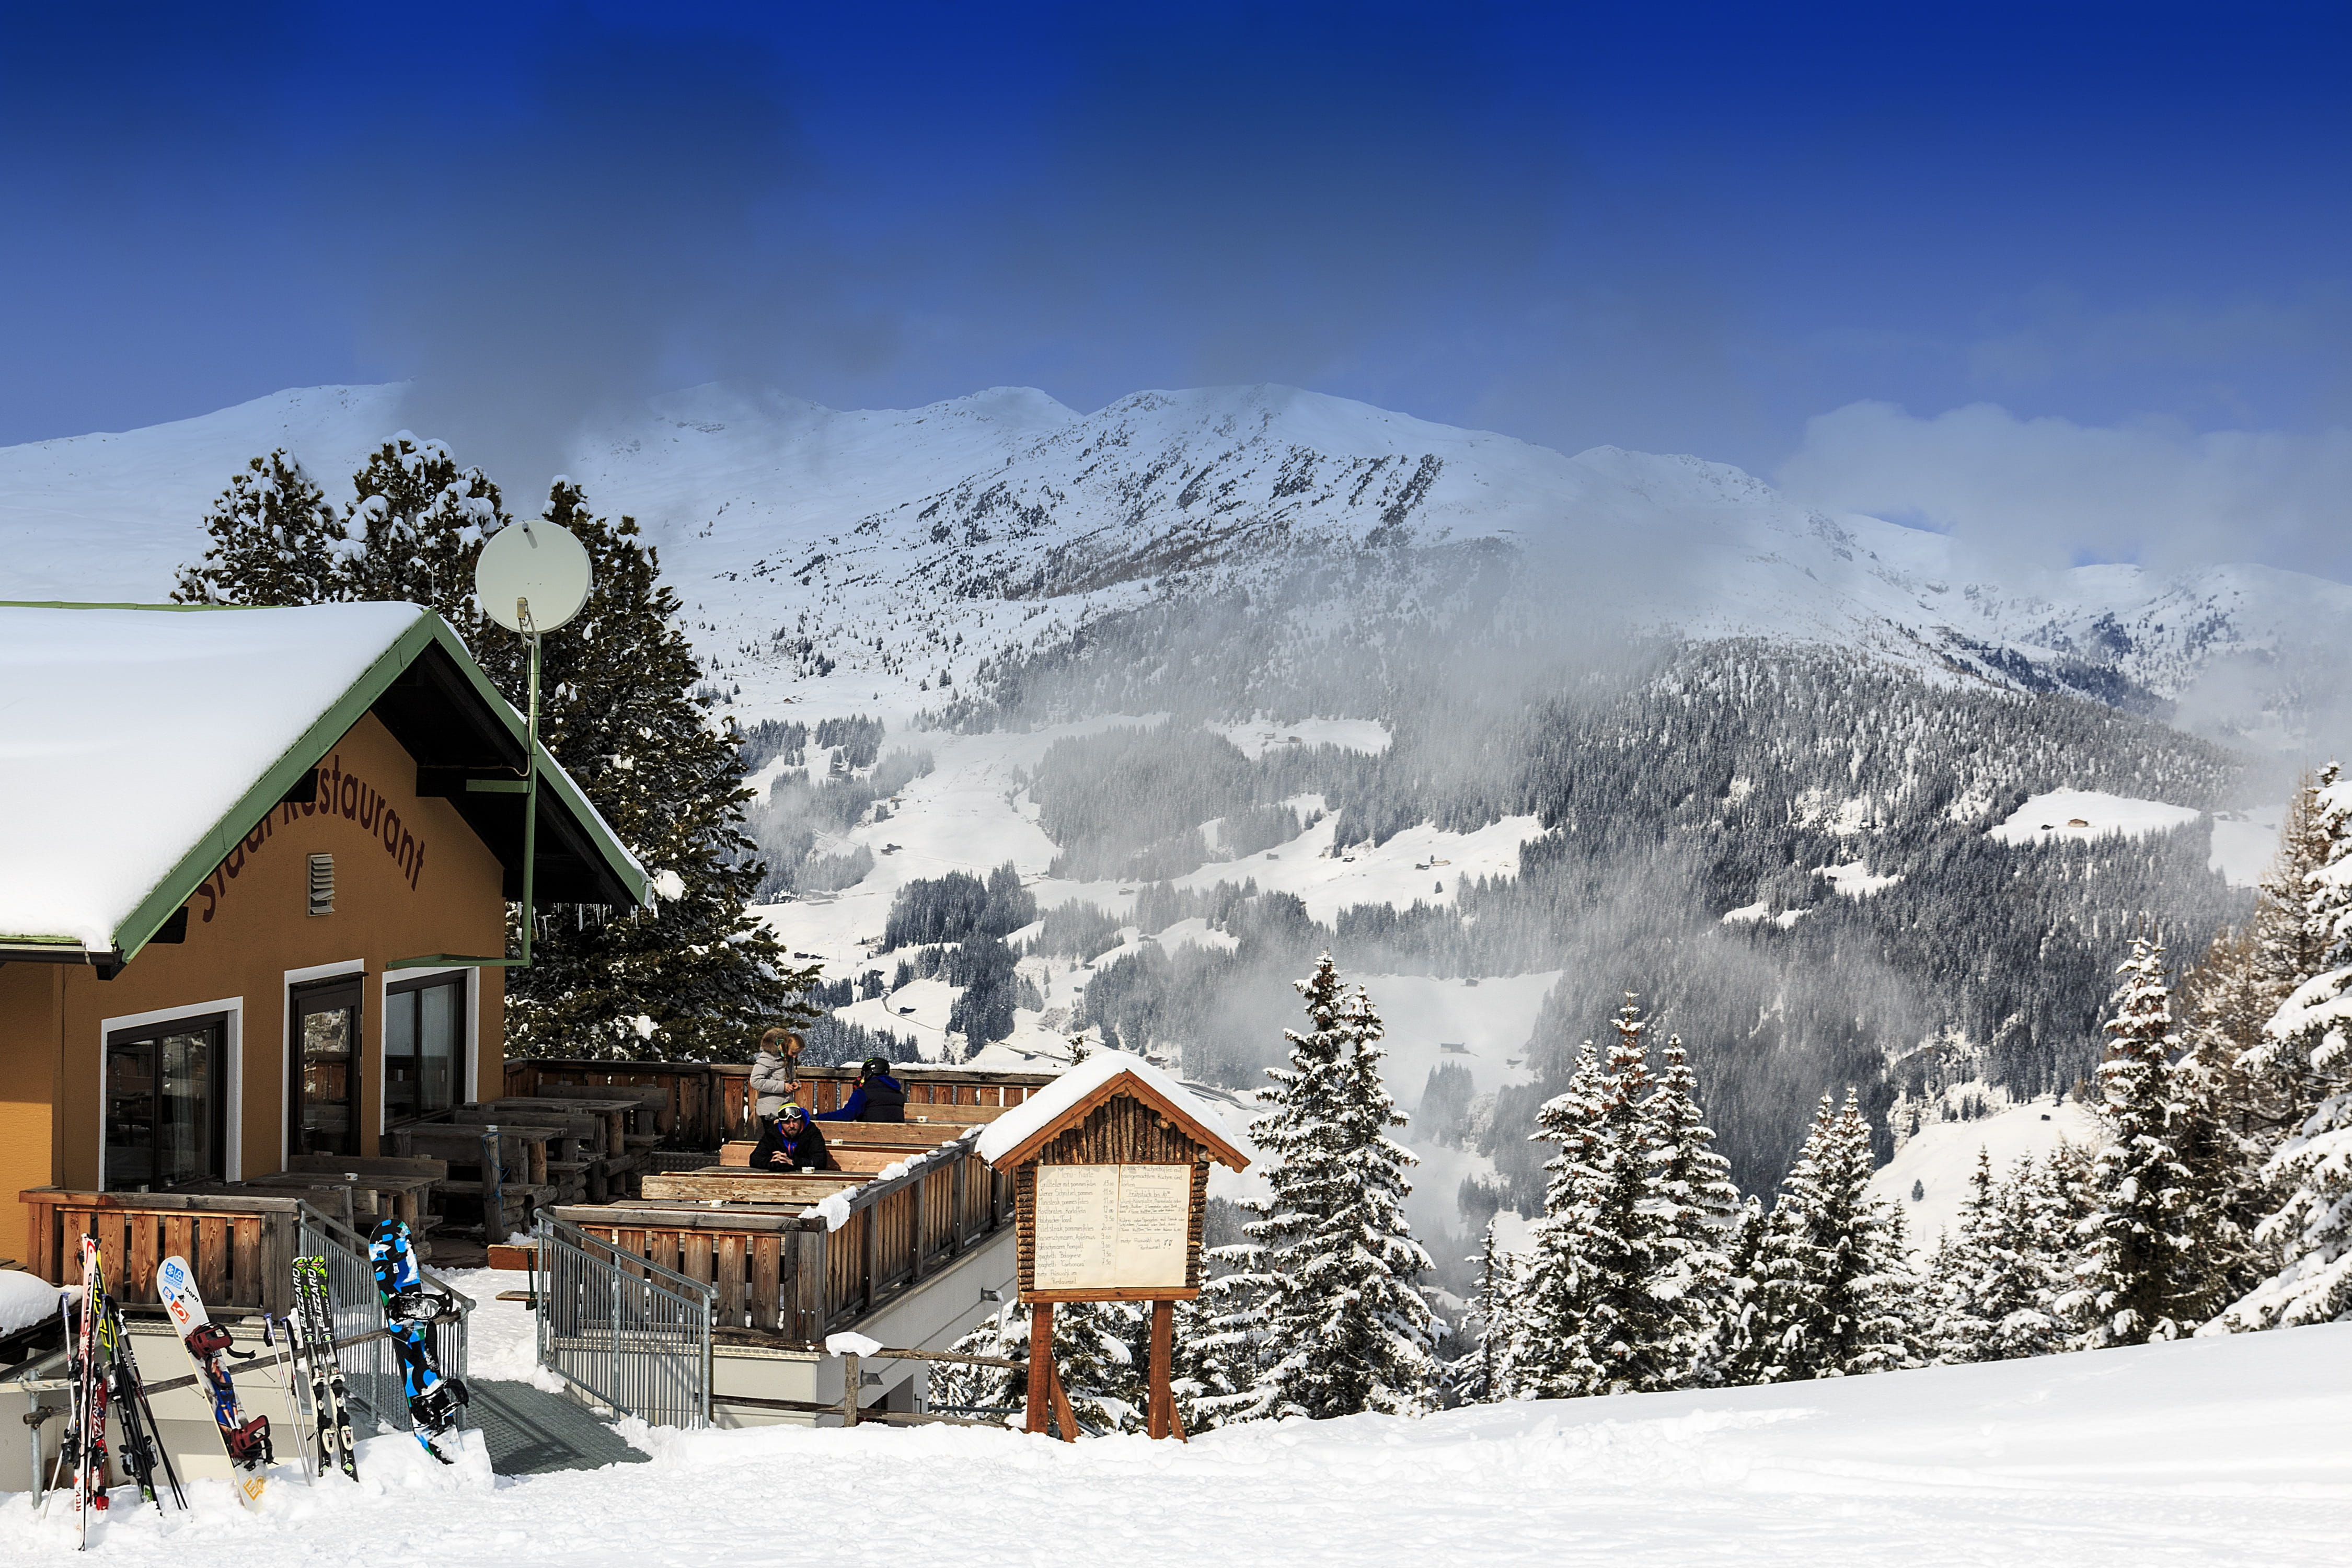 snow, winter, chalet, mountain, hut, resort, snowy, alpine